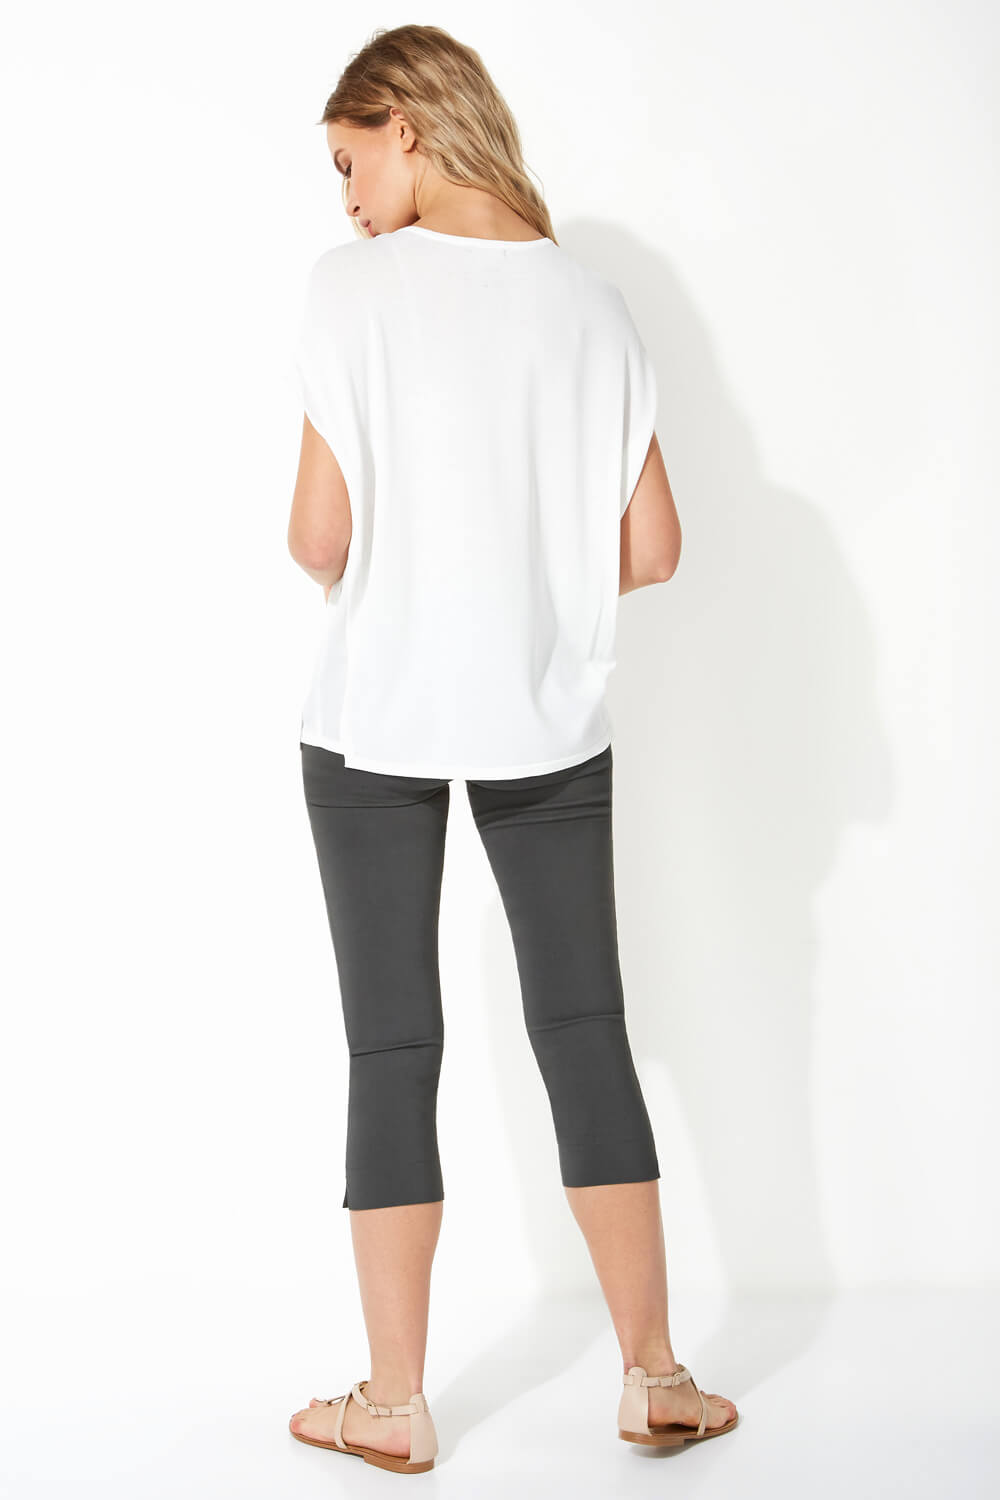 Ivory  Chiffon Panel Knit T-Shirt, Image 3 of 5